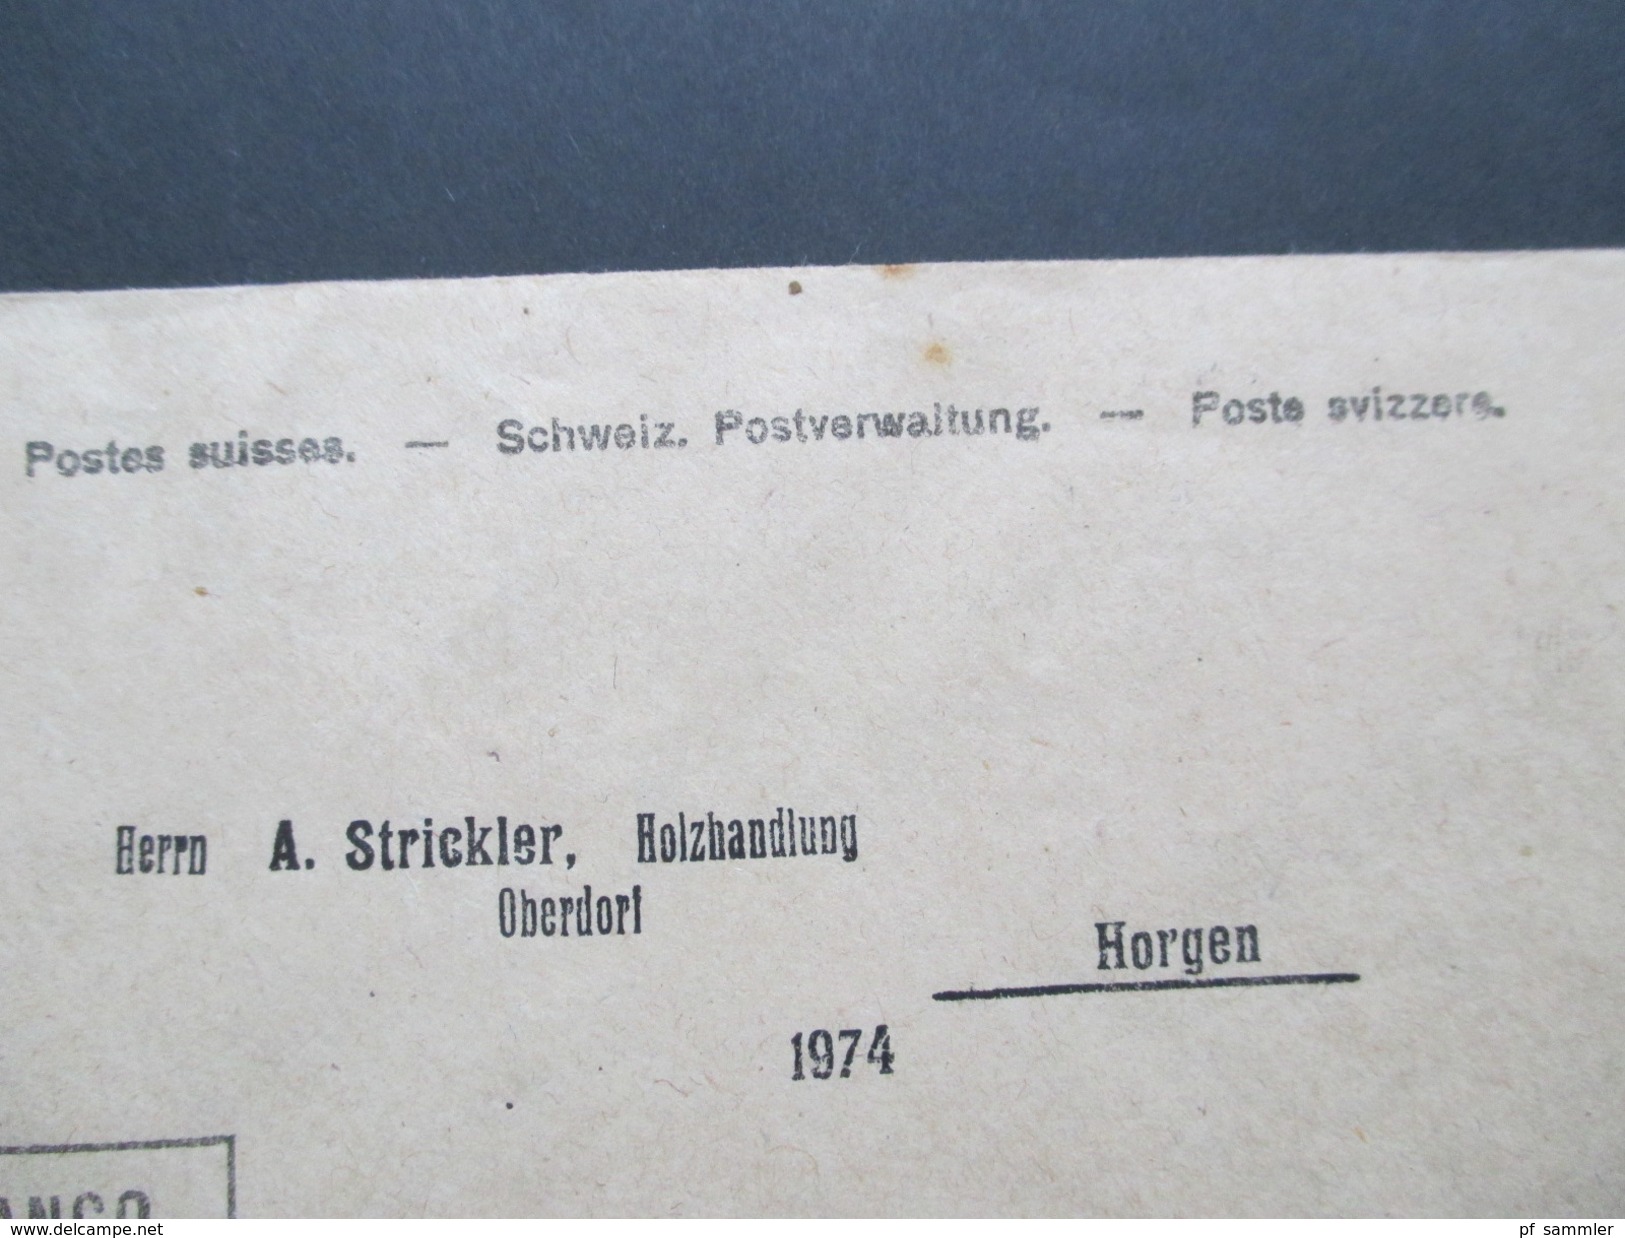 Schweiz 1915 Postkarte / Firmenkarte Cigarren Fabrik Helvetia. Burg bei Menziken. Beinwill am See